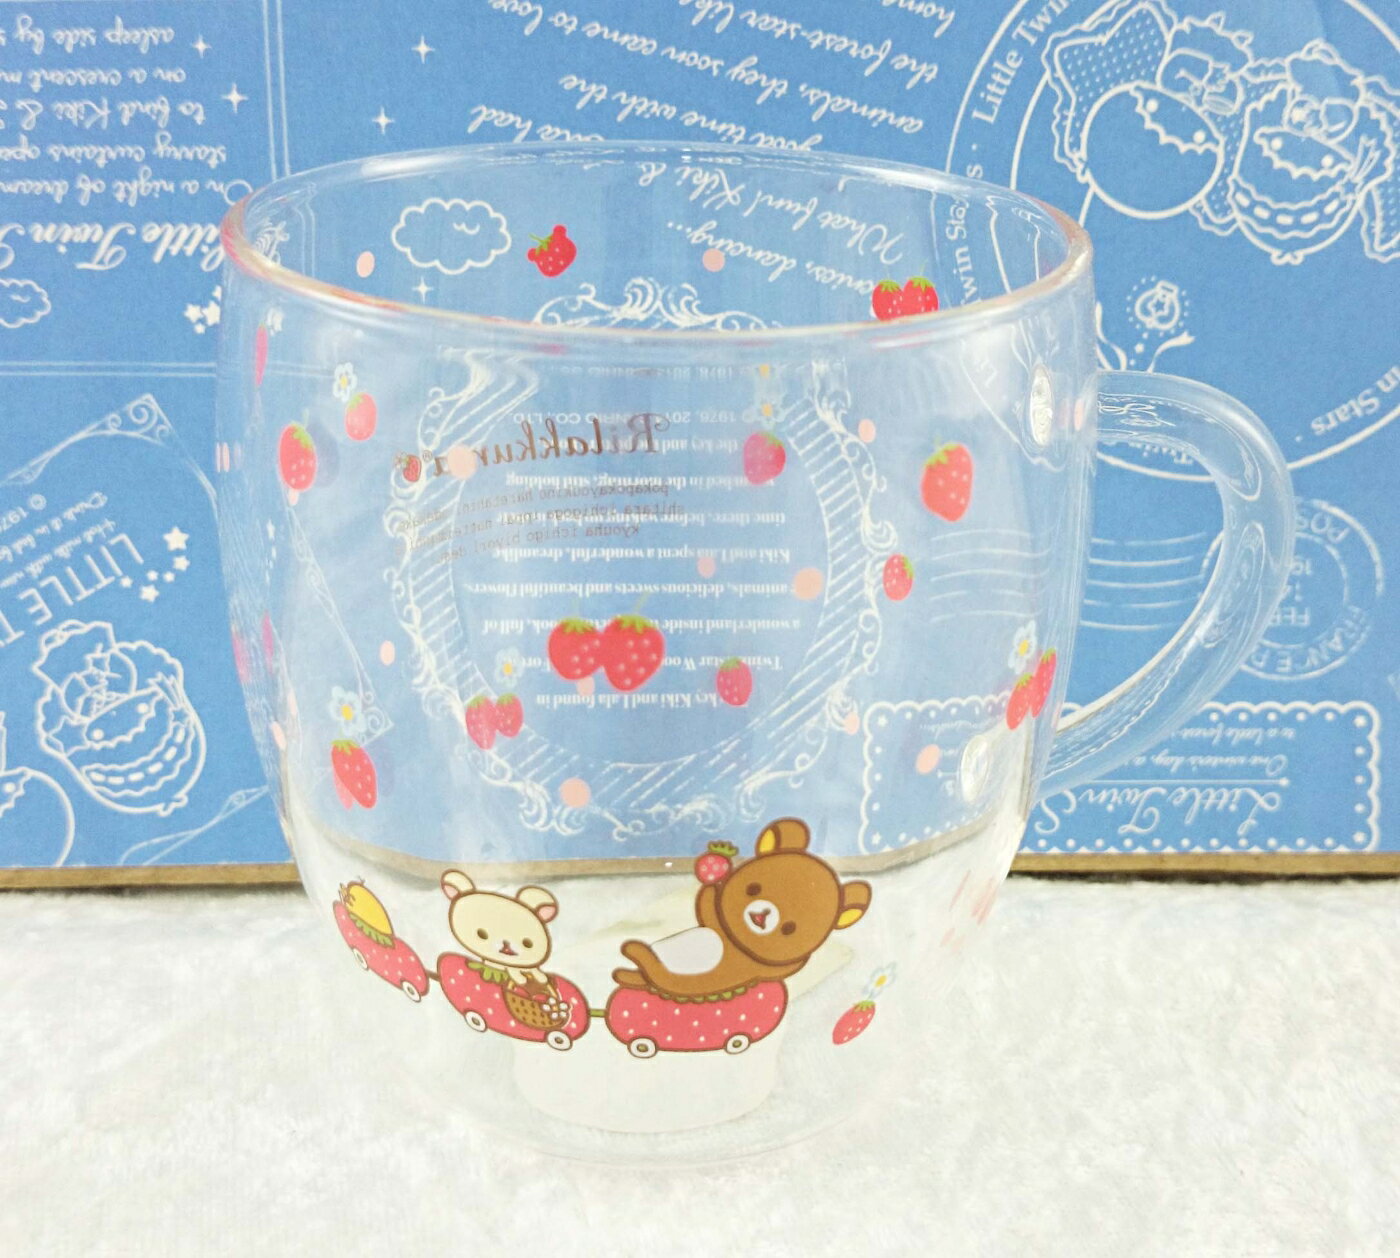 【震撼精品百貨】Rilakkuma San-X 拉拉熊懶懶熊 San-X 透明玻璃杯-草莓#50281 震撼日式精品百貨